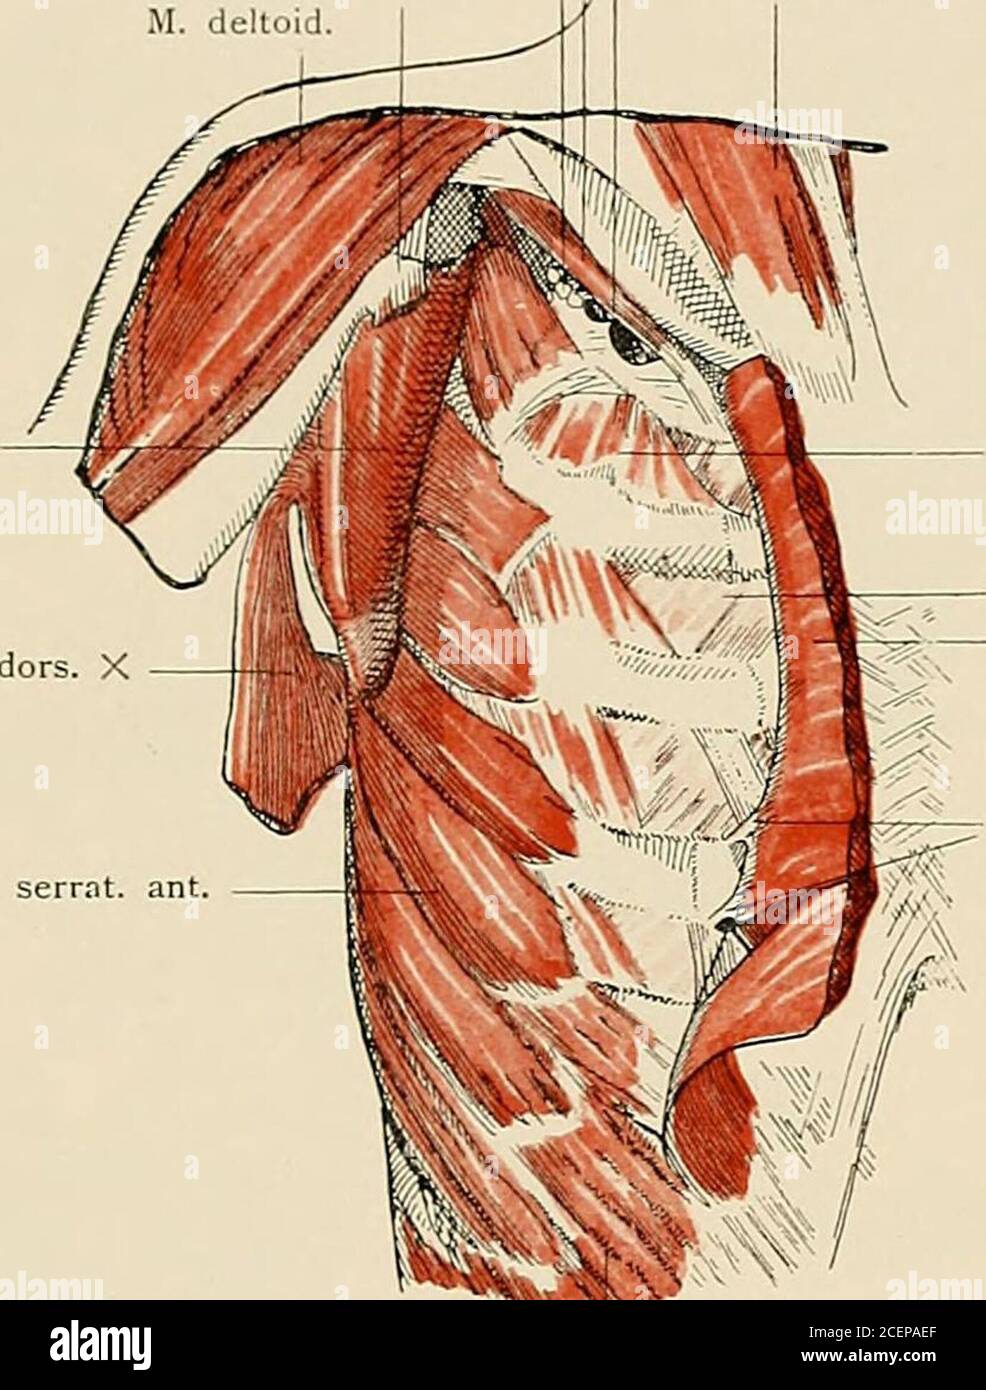 . Die Anatomie des Menschen : Mit Hinweisen auf die ärztliche Praxis : Abt. 1-6. Text und Atlas. Vasa axill. M. cora- cobr. et biceps M. latiss.dors. M. serrat. ant. Brustmuskeln. Rechts eiste Schichte, Hnks zweite Schichte. Musculi thoracis. 20 - 26 26. M. subcl.Plex. 1 Vasa subcl. X M. pect. min. X brach. X[ i M. sternocleidomast. M. siibscap. M. iatiss. dors.. M. serrat M. intercost. ext. M. intercost. int.M. pect. maj. zurück-geschlagen Costalursprünge desM. pect. maj. M. obliq. abd. ext.Brustmuskeln, tiefste Schichte. Musculi thoracis. — 21 — Proc. corac.Clavicula 27 M. omohyoid. X M trap Stock Photo